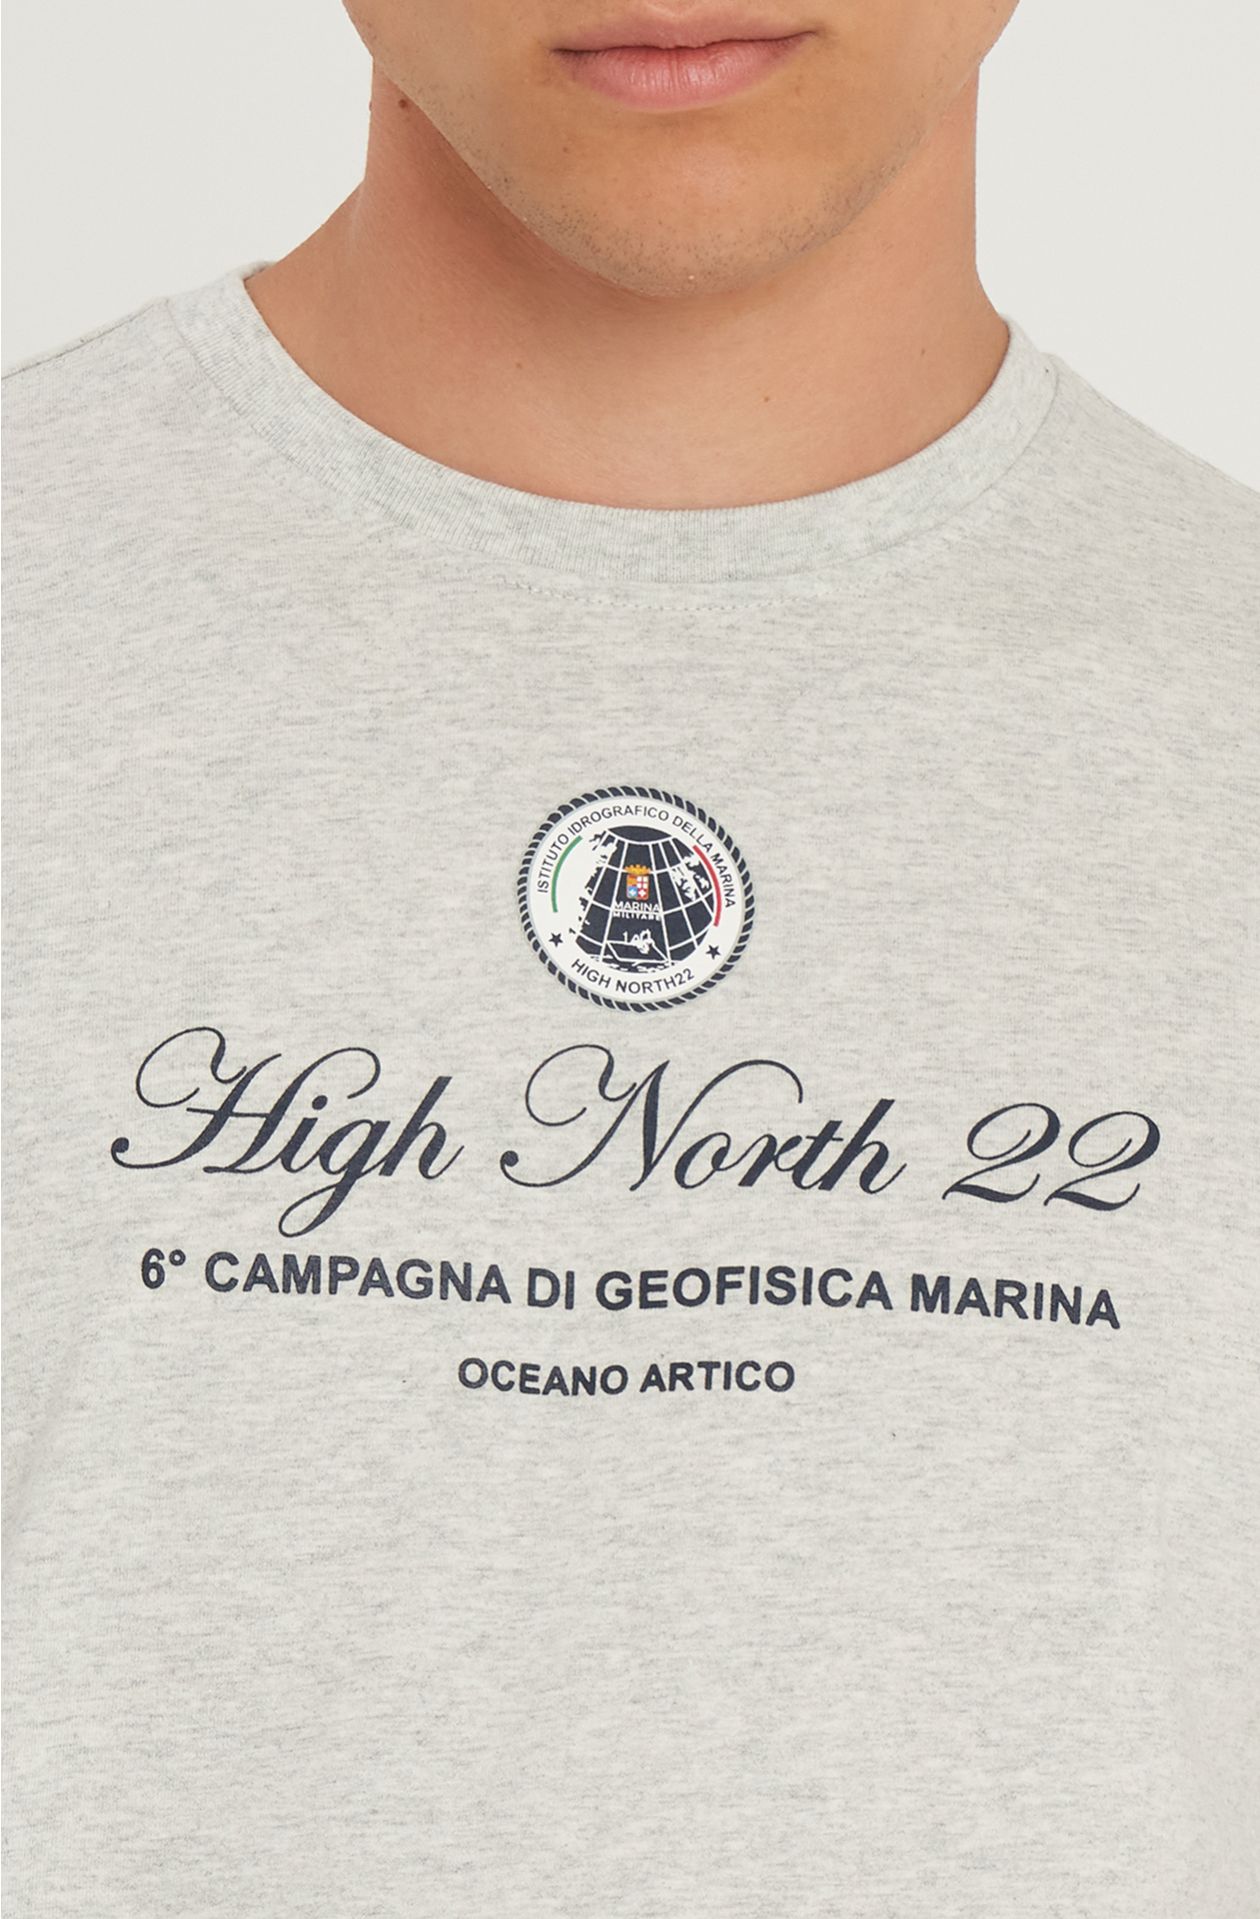 Camiseta High North22 de puro algodón